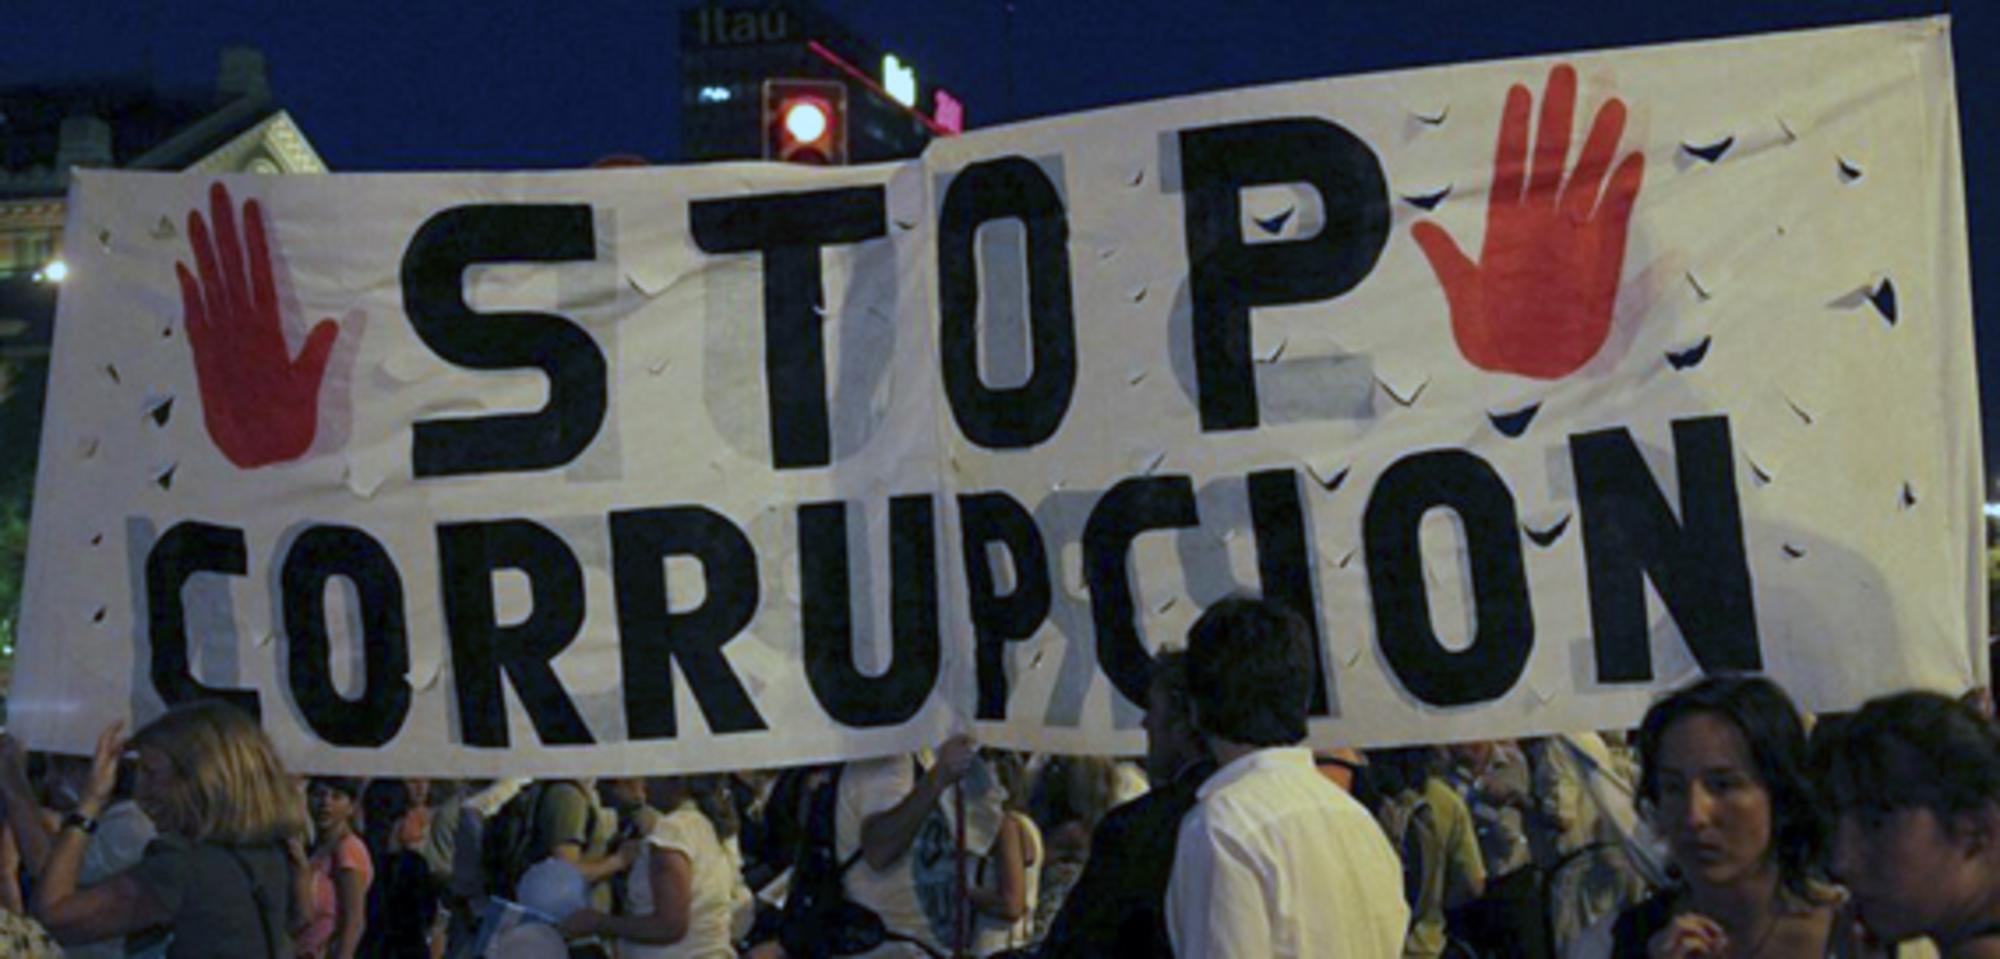 Stop corrupción